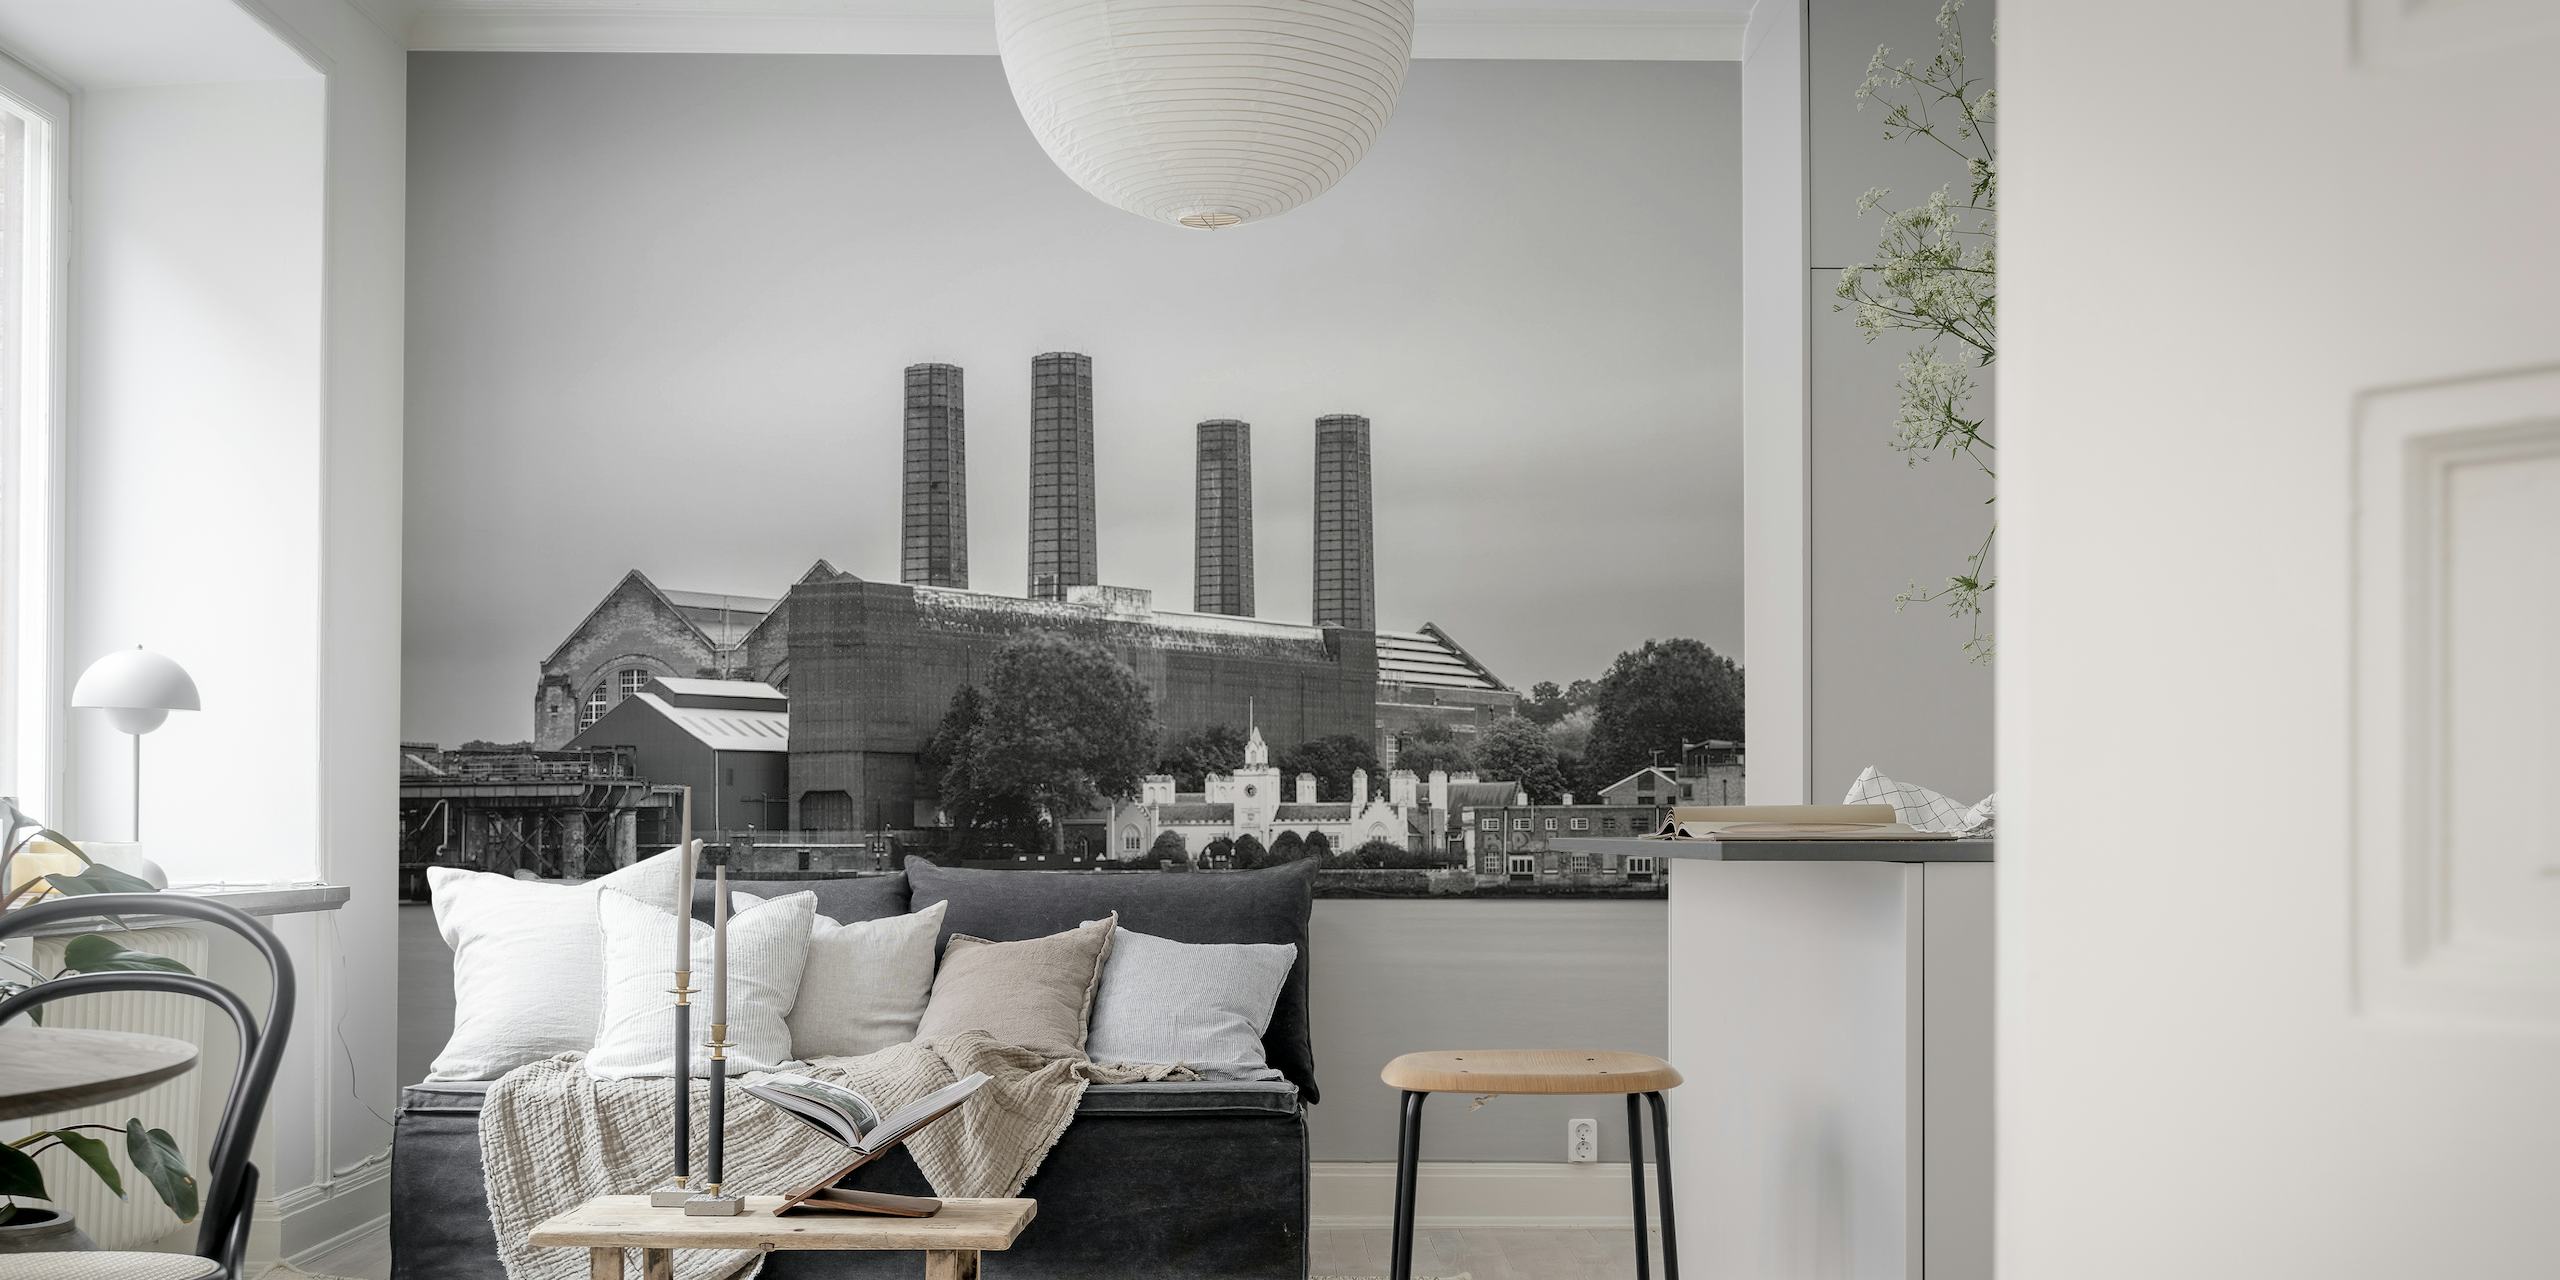 Mural de parede preto e branco da Central Elétrica de Greenwich com um visual industrial clássico